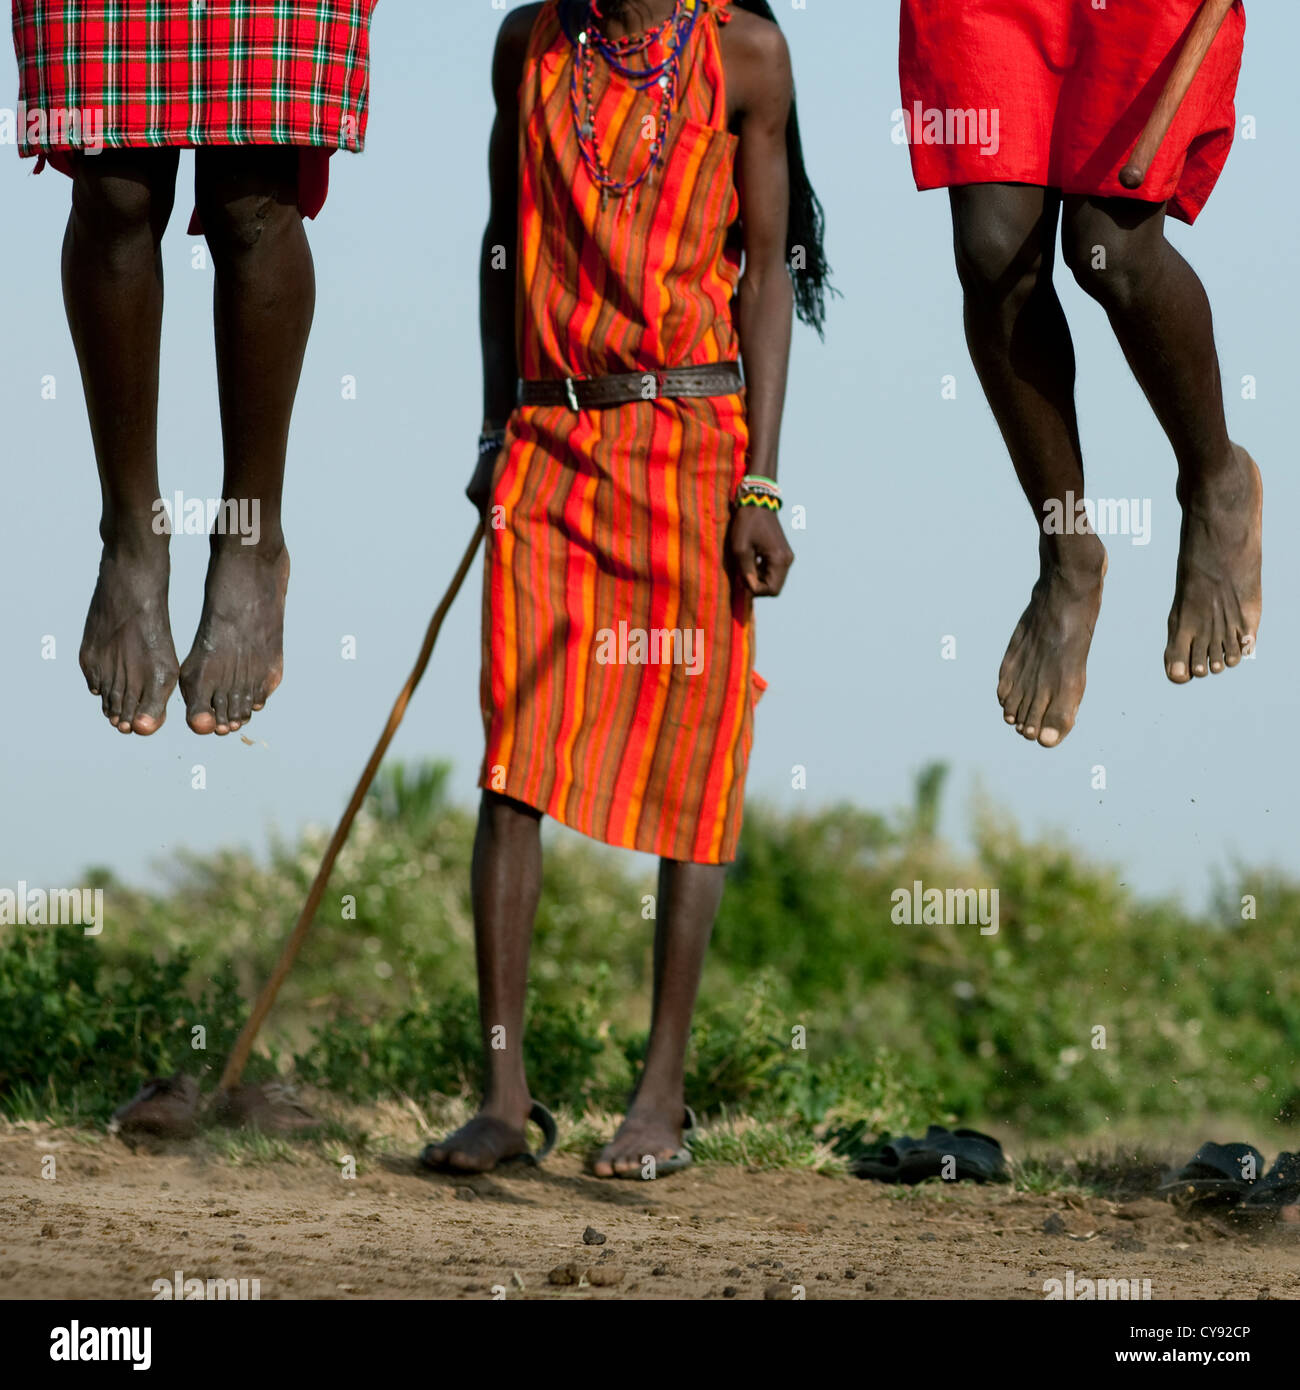 Maasai Warriors Dancing And Jumping, Kenya Stock Photo